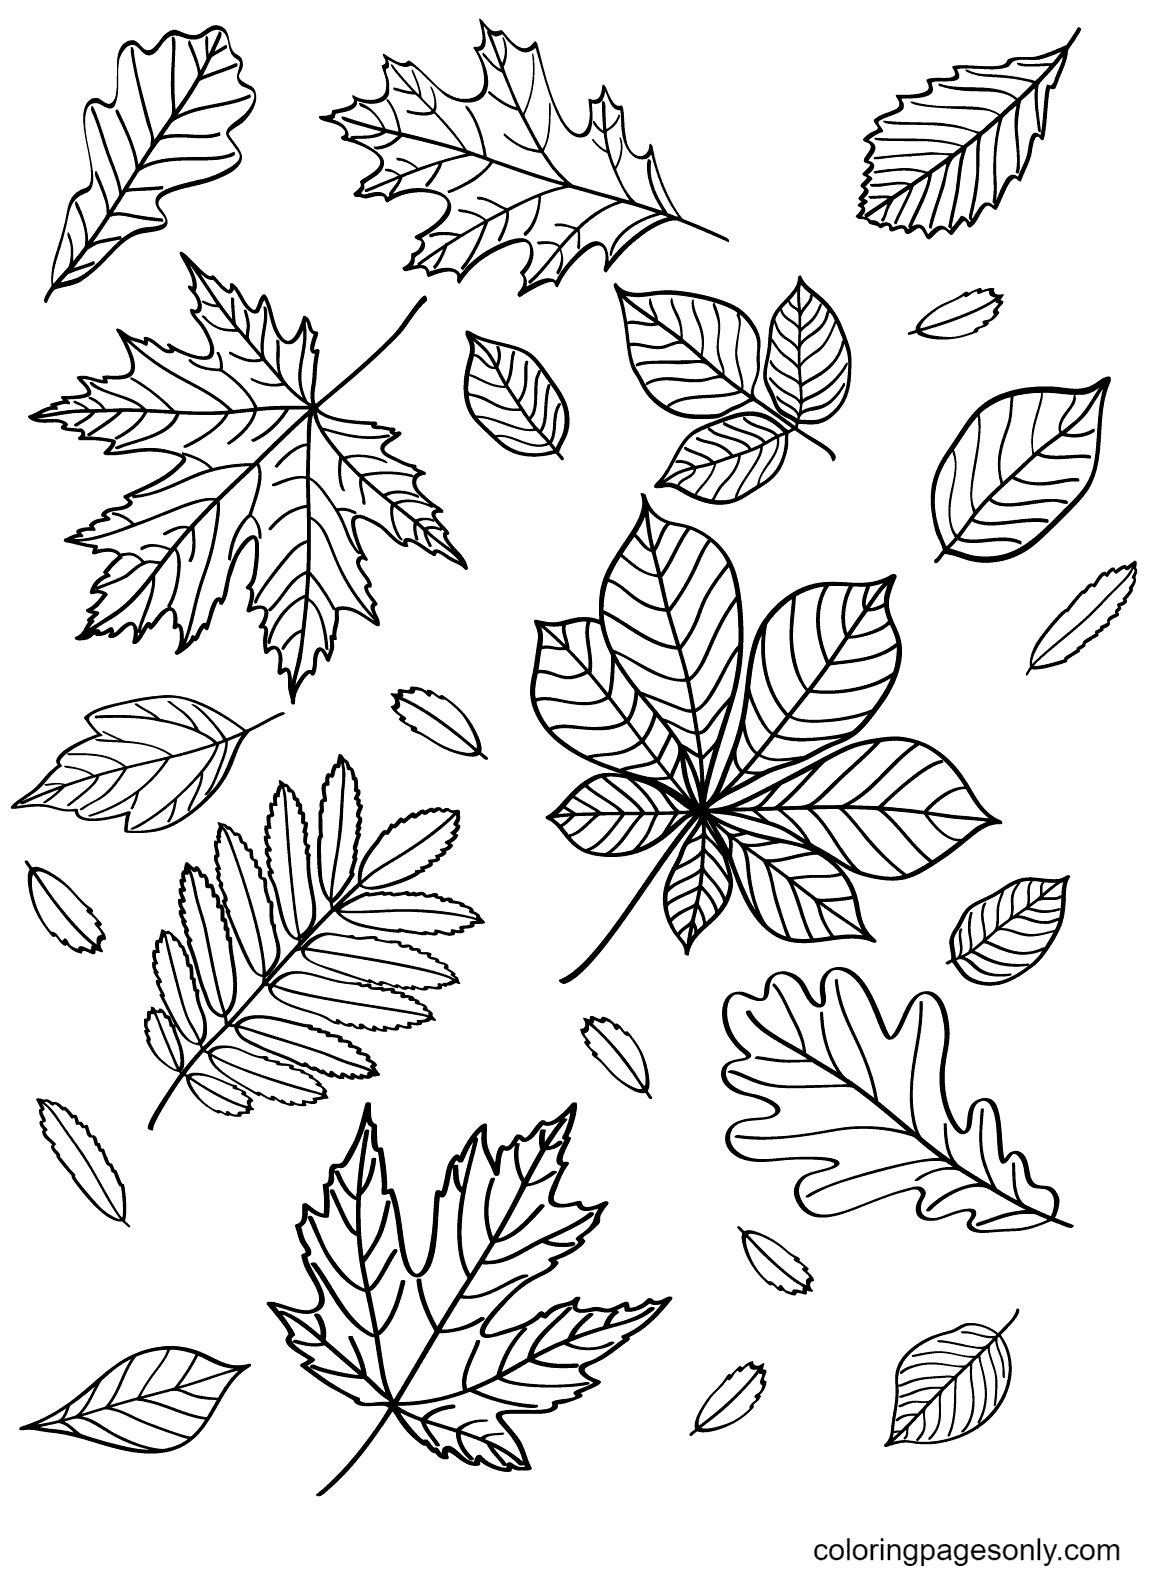 Página para colorear gratis de hojas de otoño